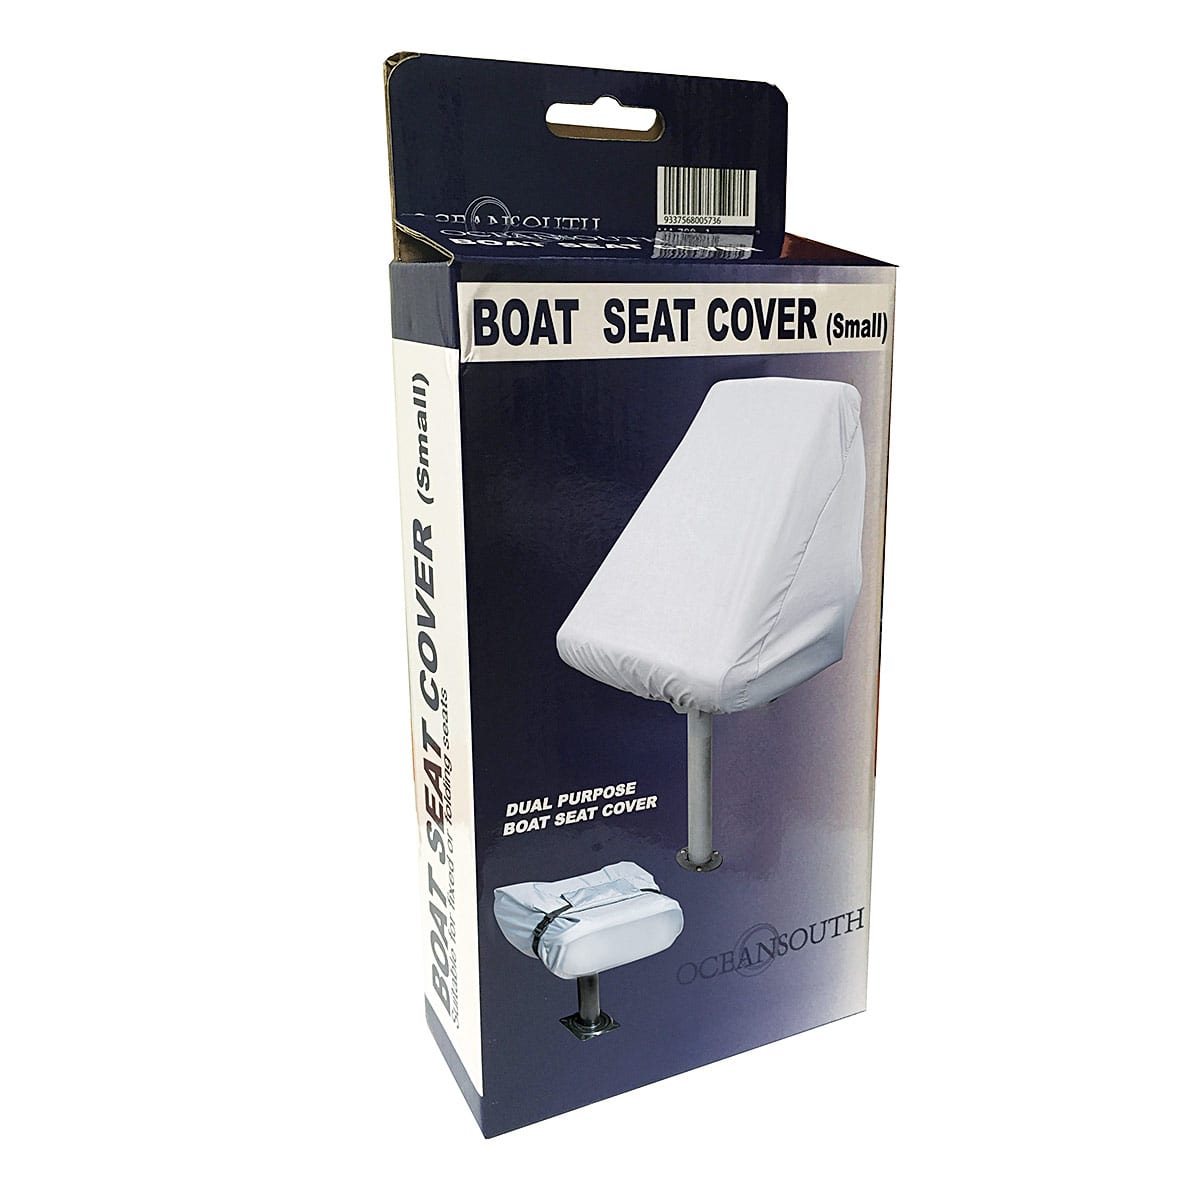 Boat Seat Cover (small) box